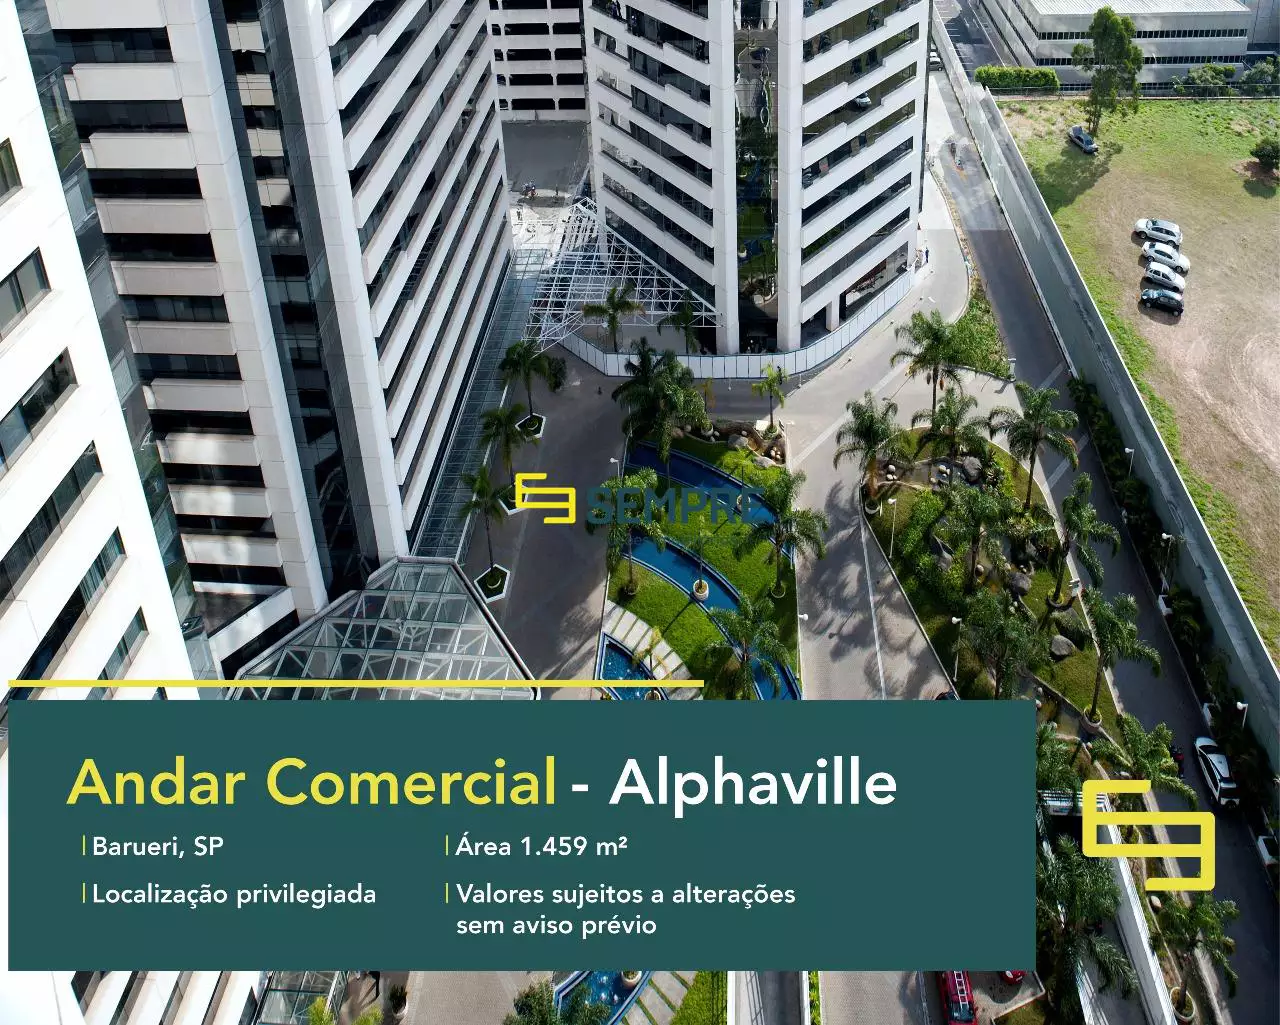 Laje corporativa no CA Rio Negro para locação - Alphaville, excelente localização. O estabelecimento comercial conta com área de 1.459 m².